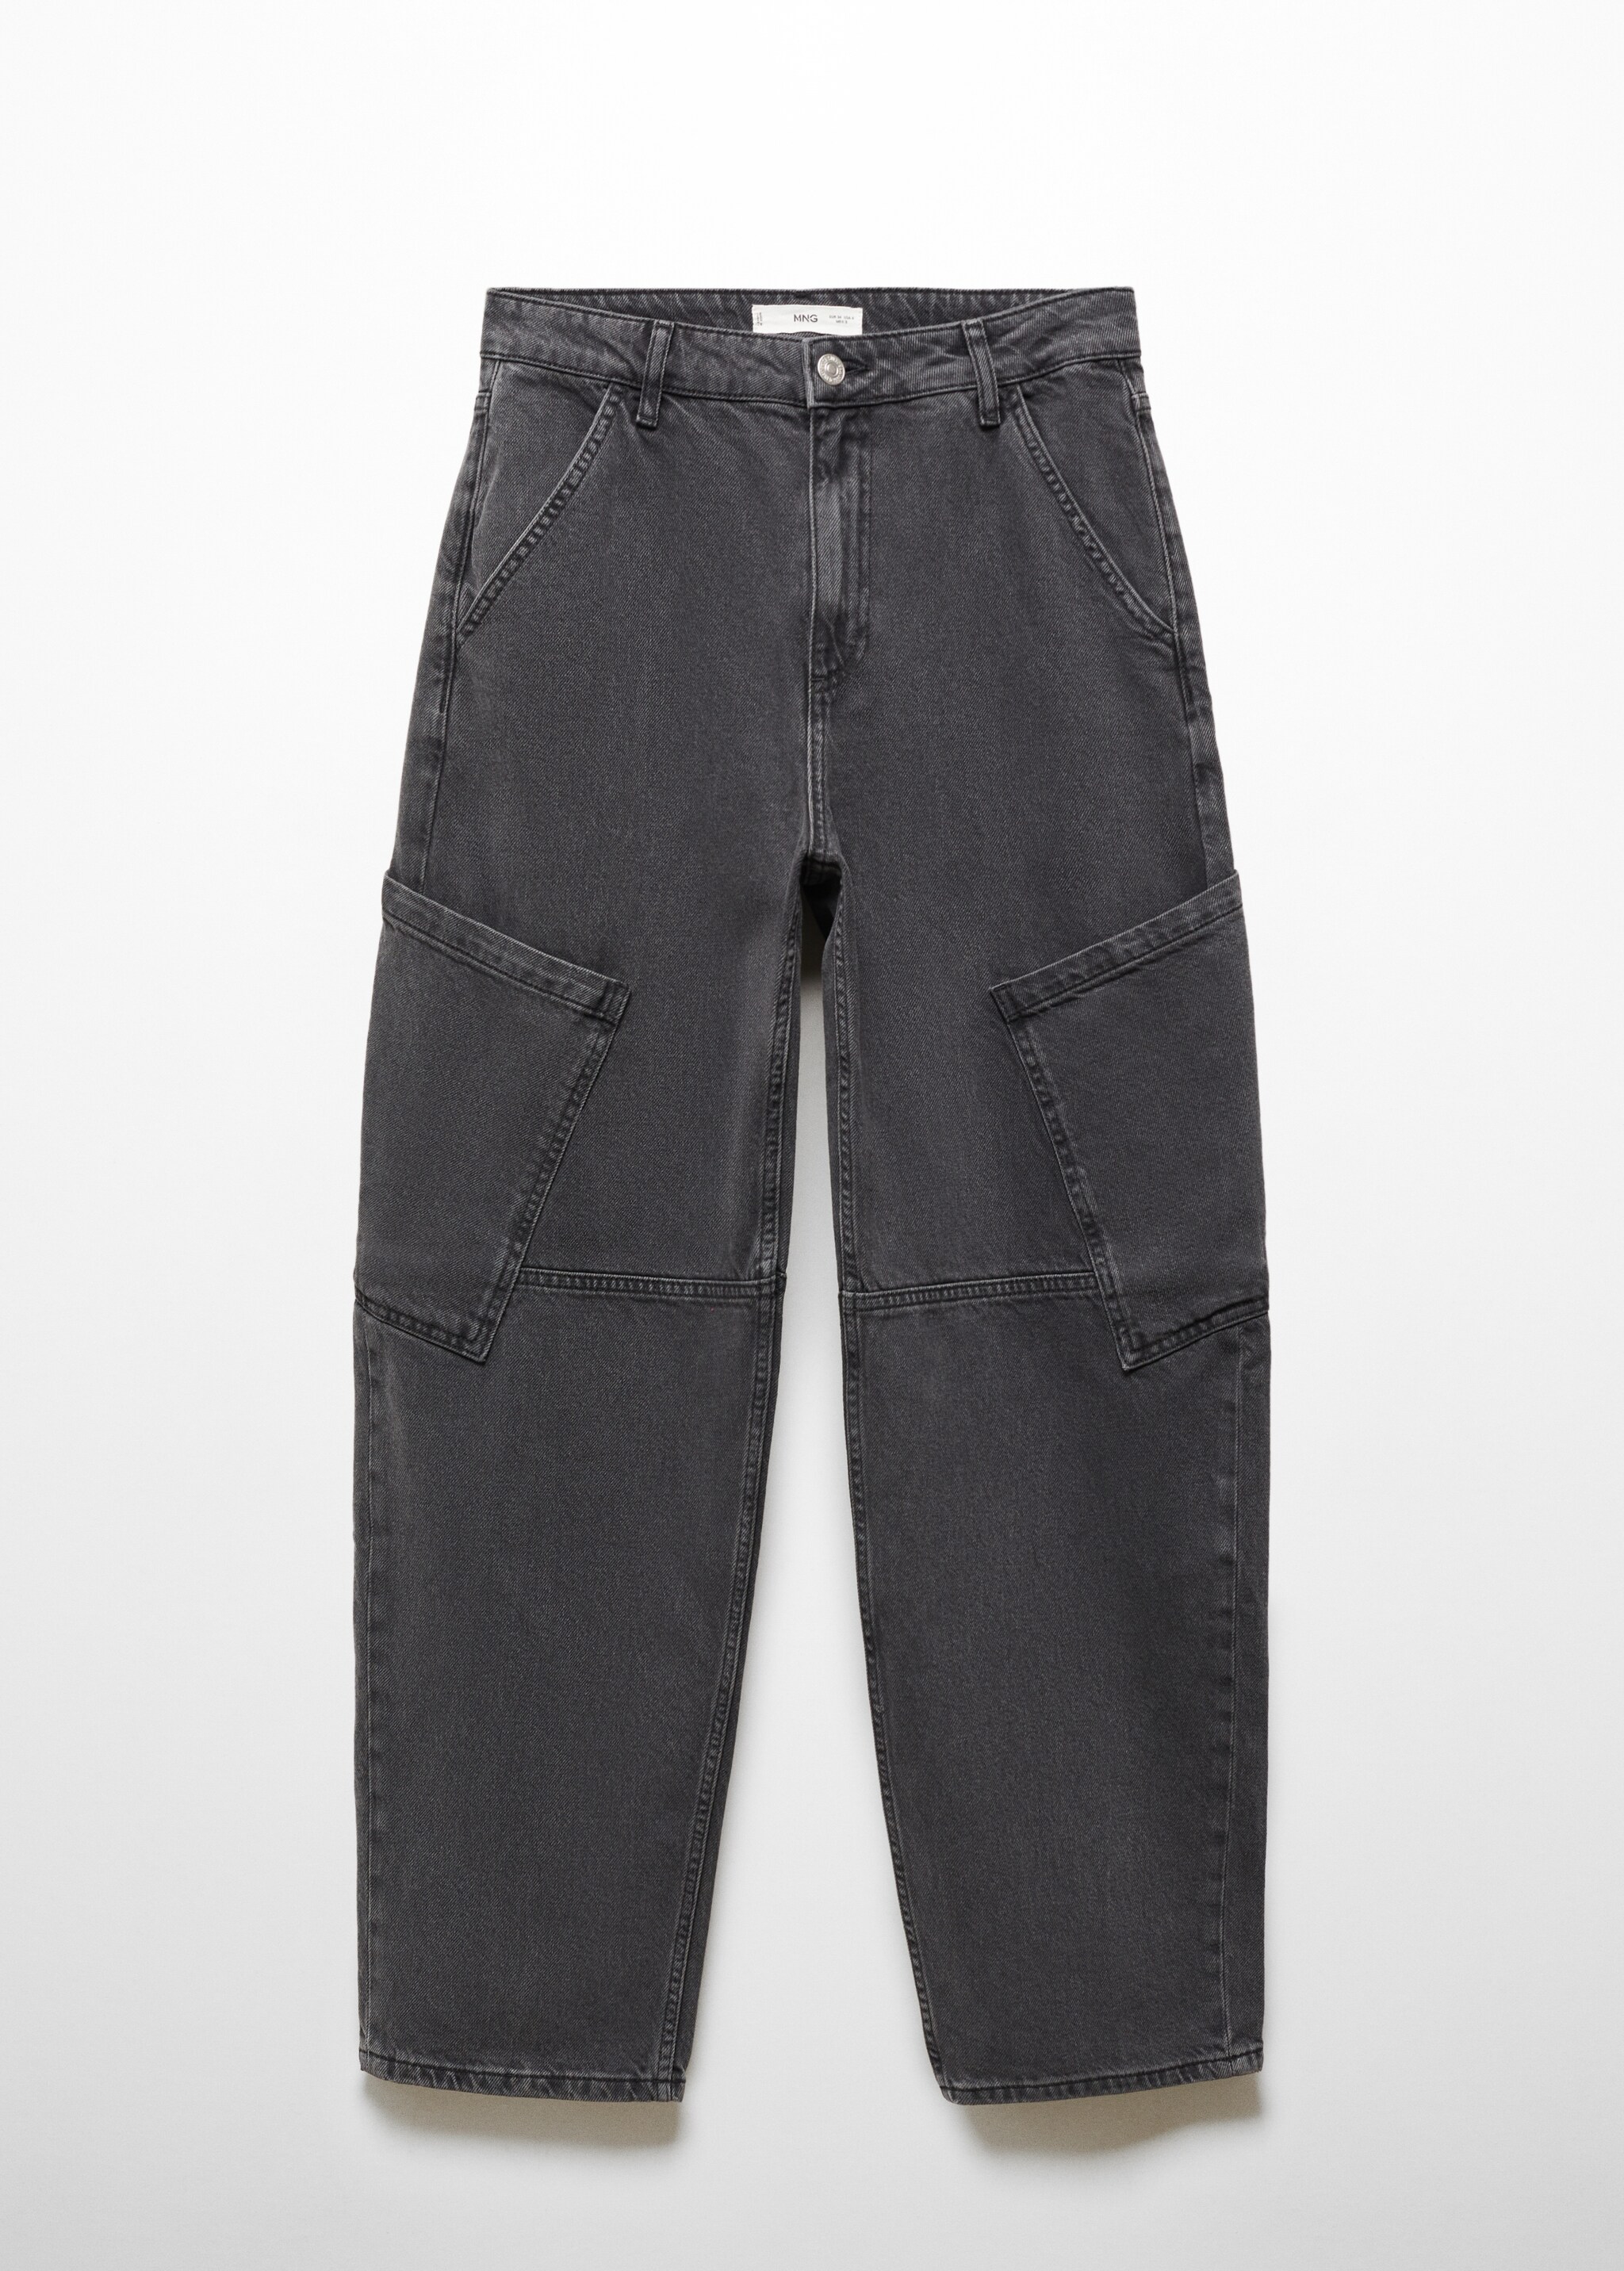 Orta belli slouchy kargo jean pantolon - Modelsiz ürün